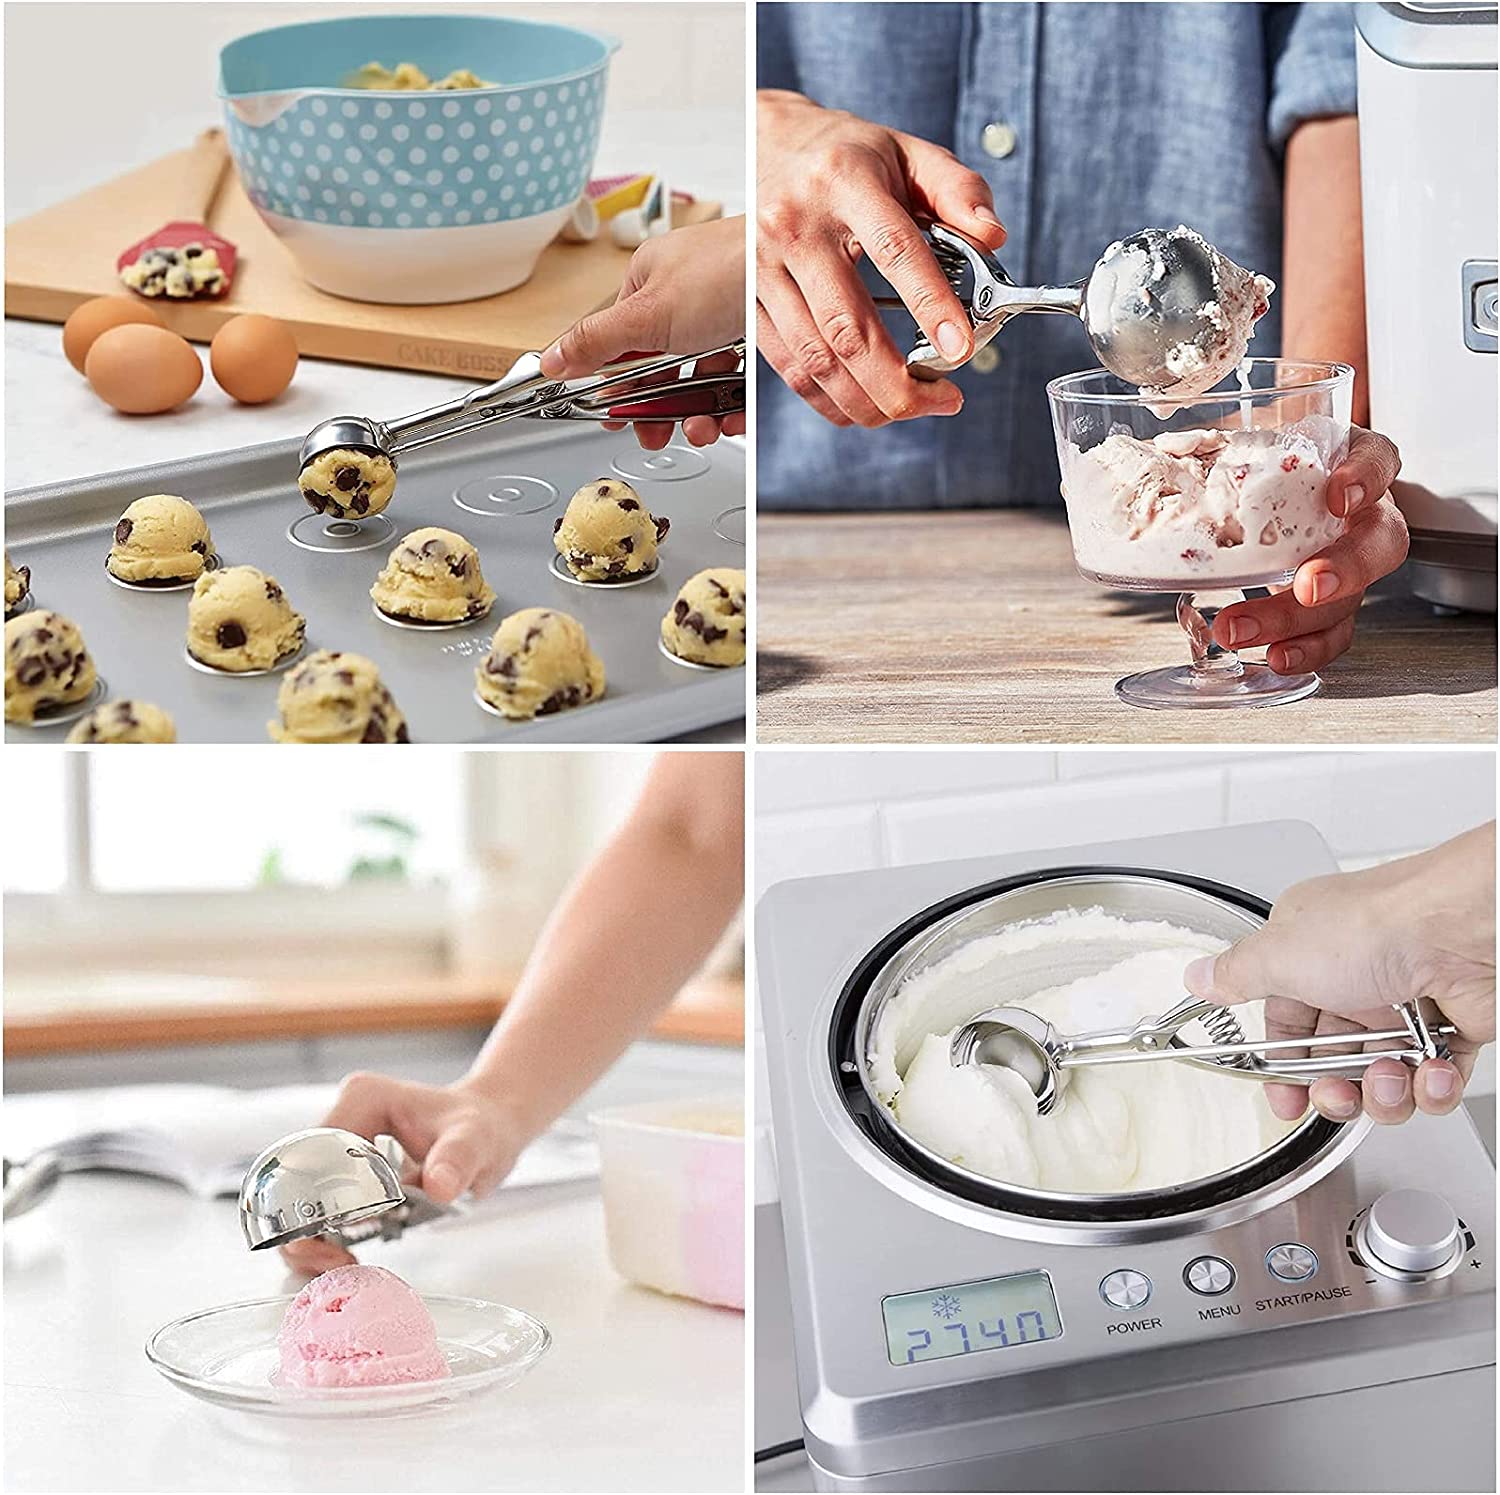 https://katycraftimage.s3.eu-west-2.amazonaws.com/stainless-stee-ice-cream-scoop-kitchen-ice-cream-scooper-with-trigger-release-cookie-scooper-baking-cookie-scoops-kitchen-tools-72036306-342597-desc-JBP68NW6NZ.jpg